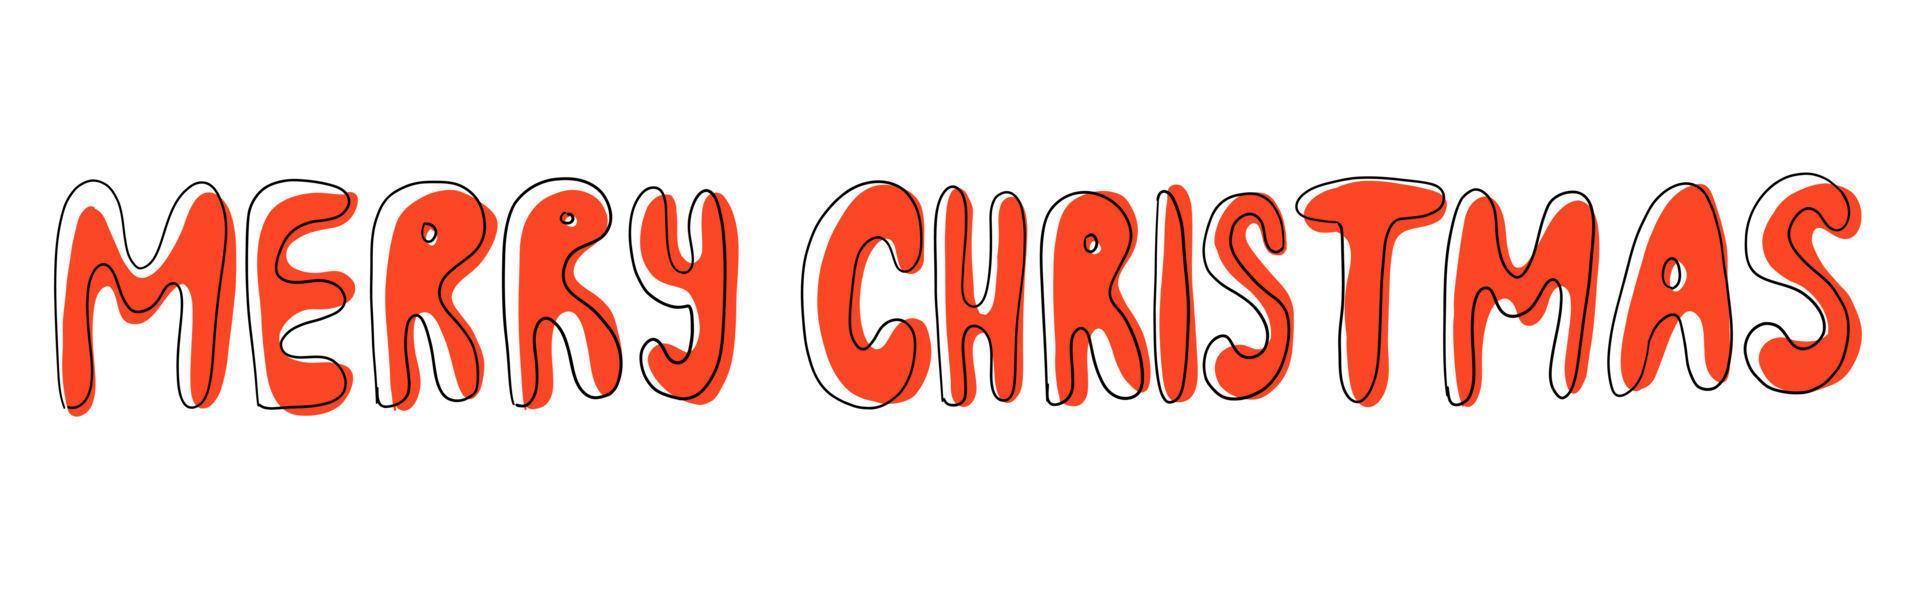 glad jul vektor text. hand dragen text. illustration isolerat på vit bakgrund.